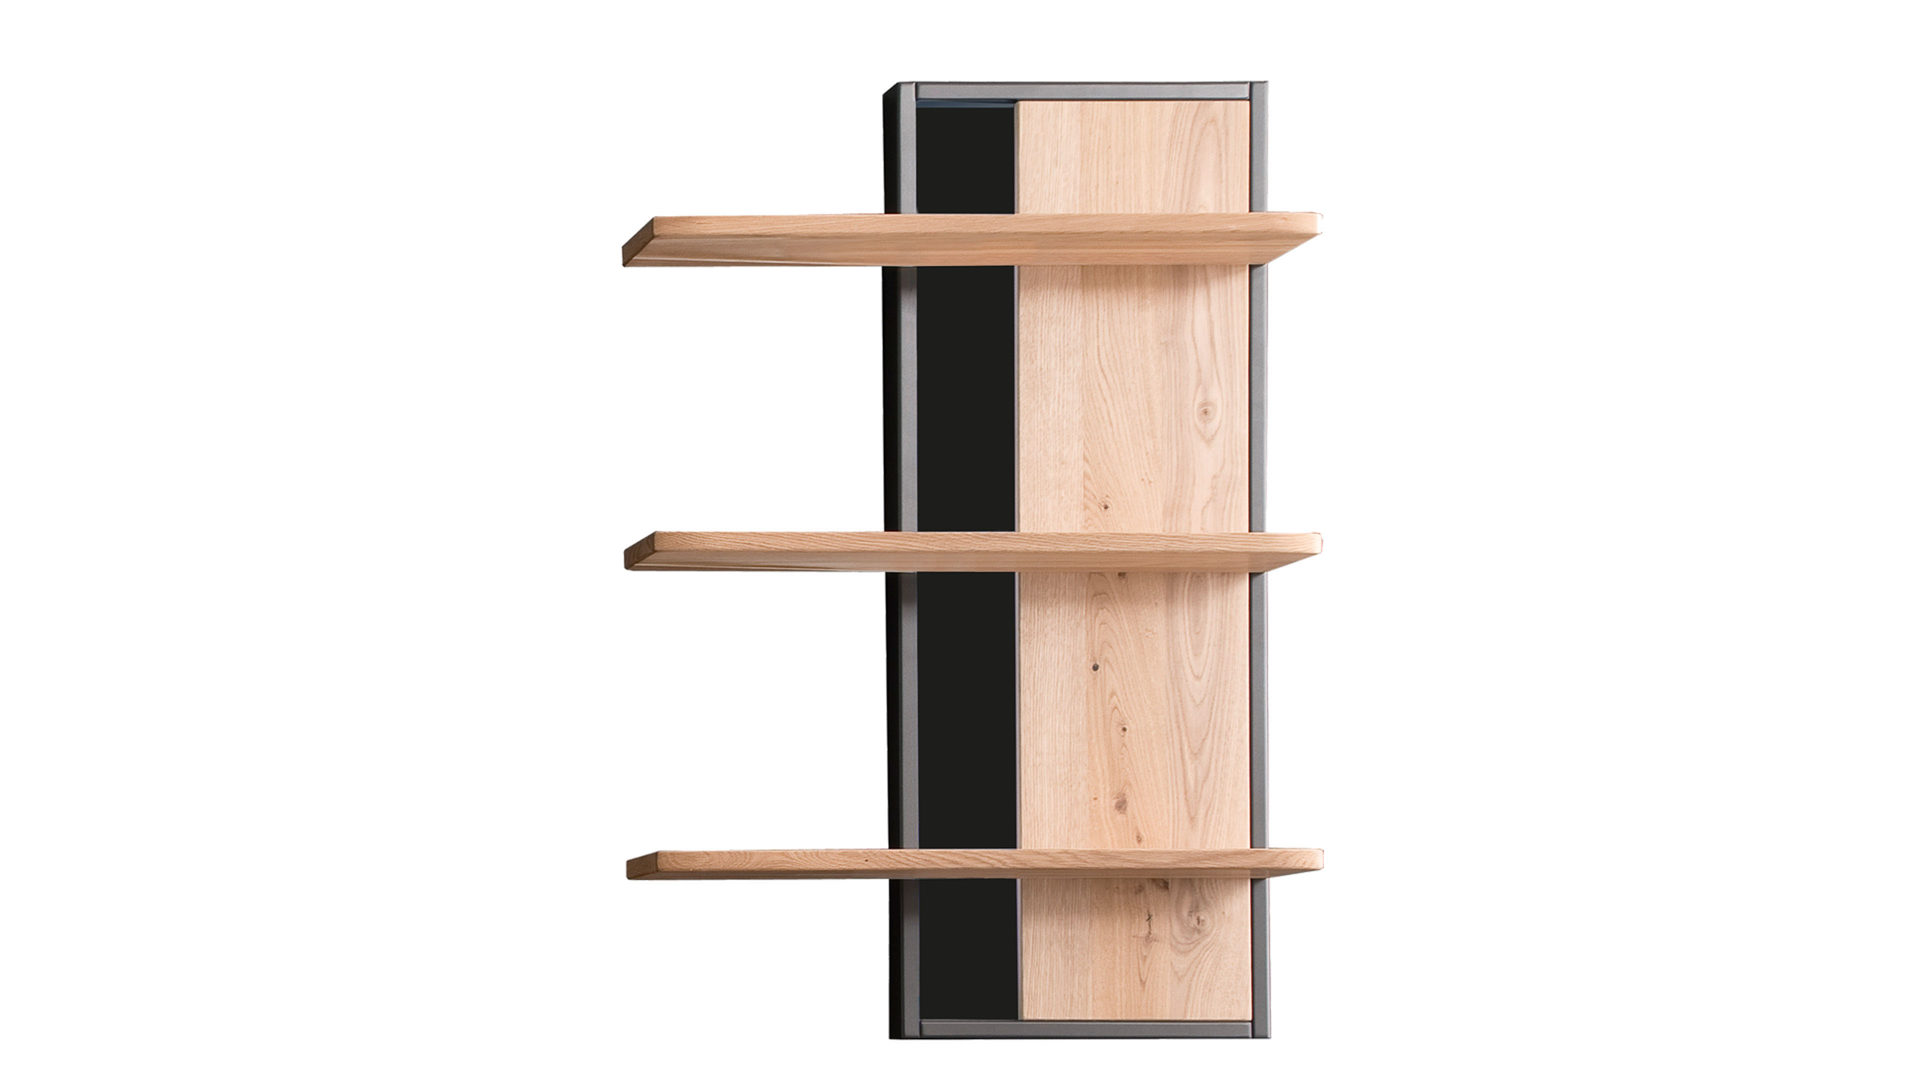 Wandregal Mca furniture aus Holz in Holzfarben Wandregal Bianco geölte Asteiche – drei Böden